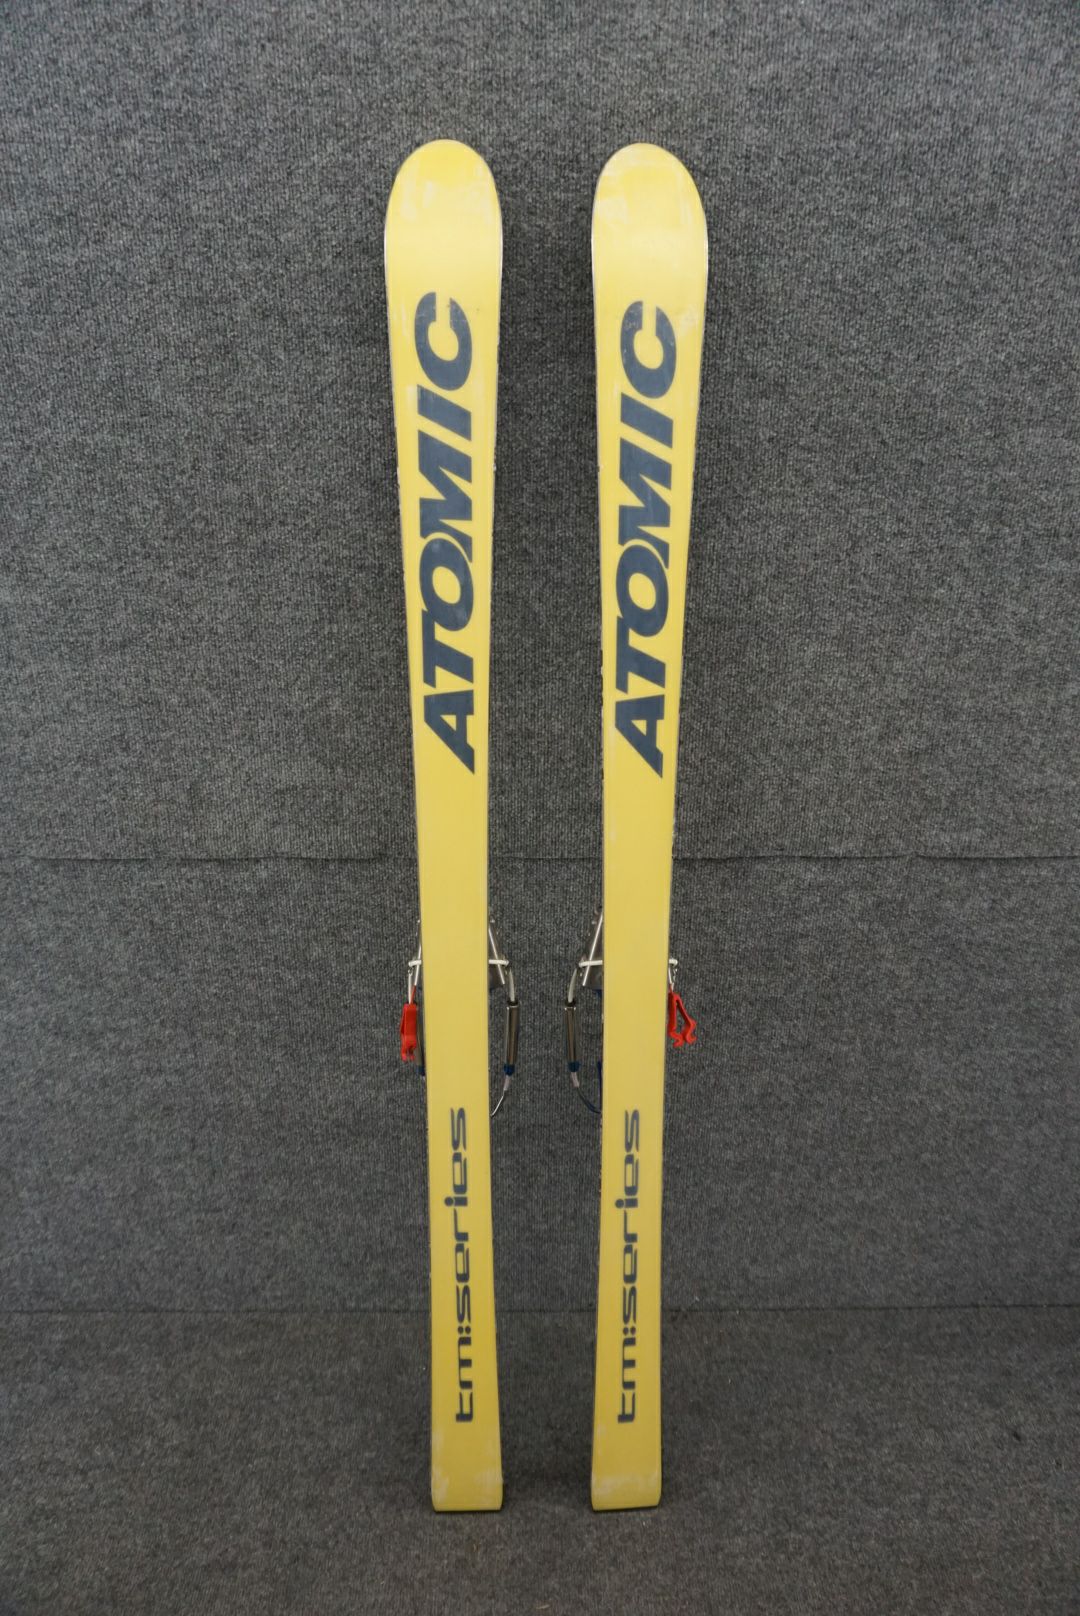 Atomic Length 153 cm/60" Women's Telemark Skis